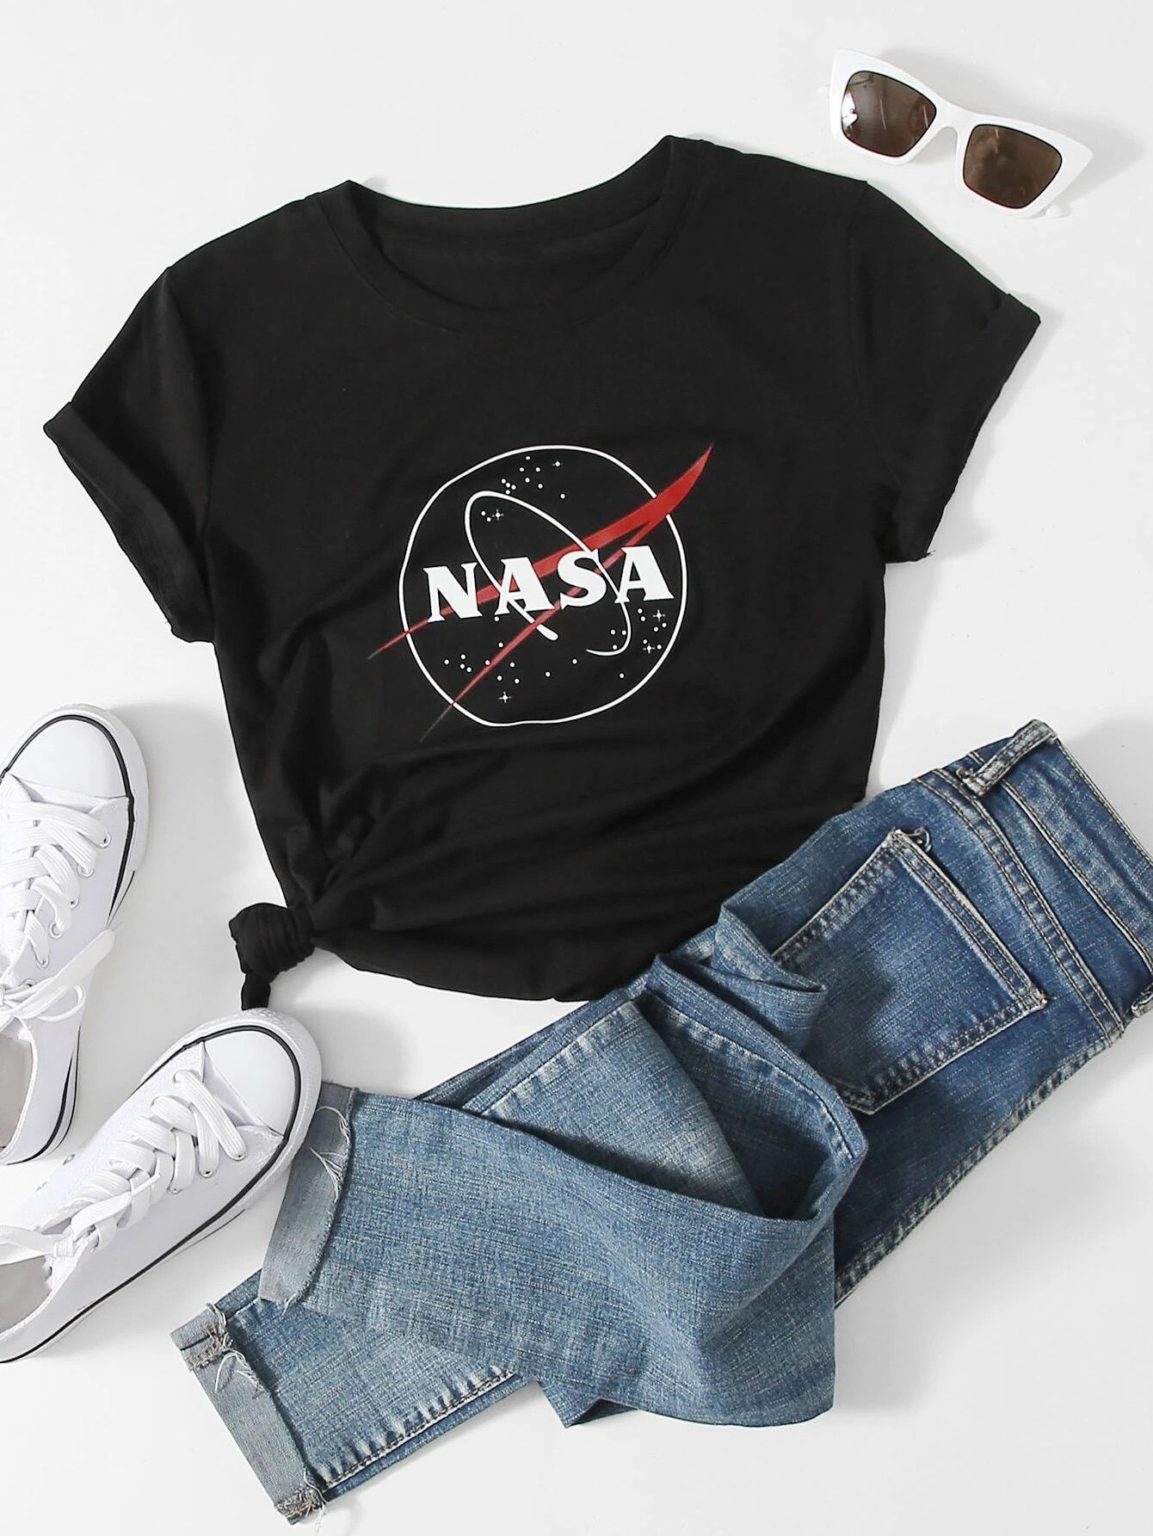 Дамска тениска NASA*black